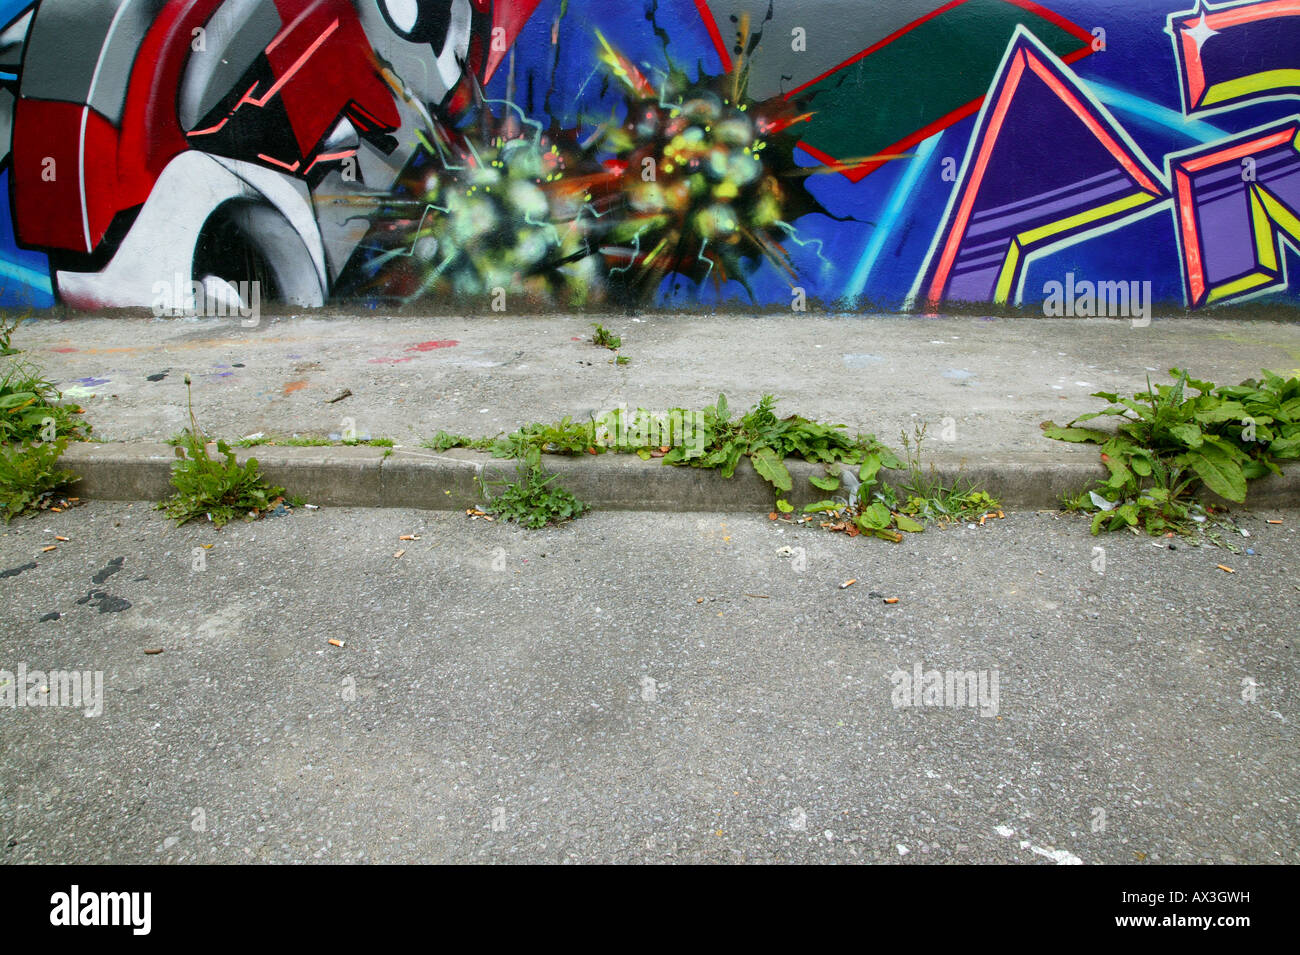 Graffitiwand abgedeckt und überwucherten Fußweg Zigarettenkippen überall verstreut Stockfoto